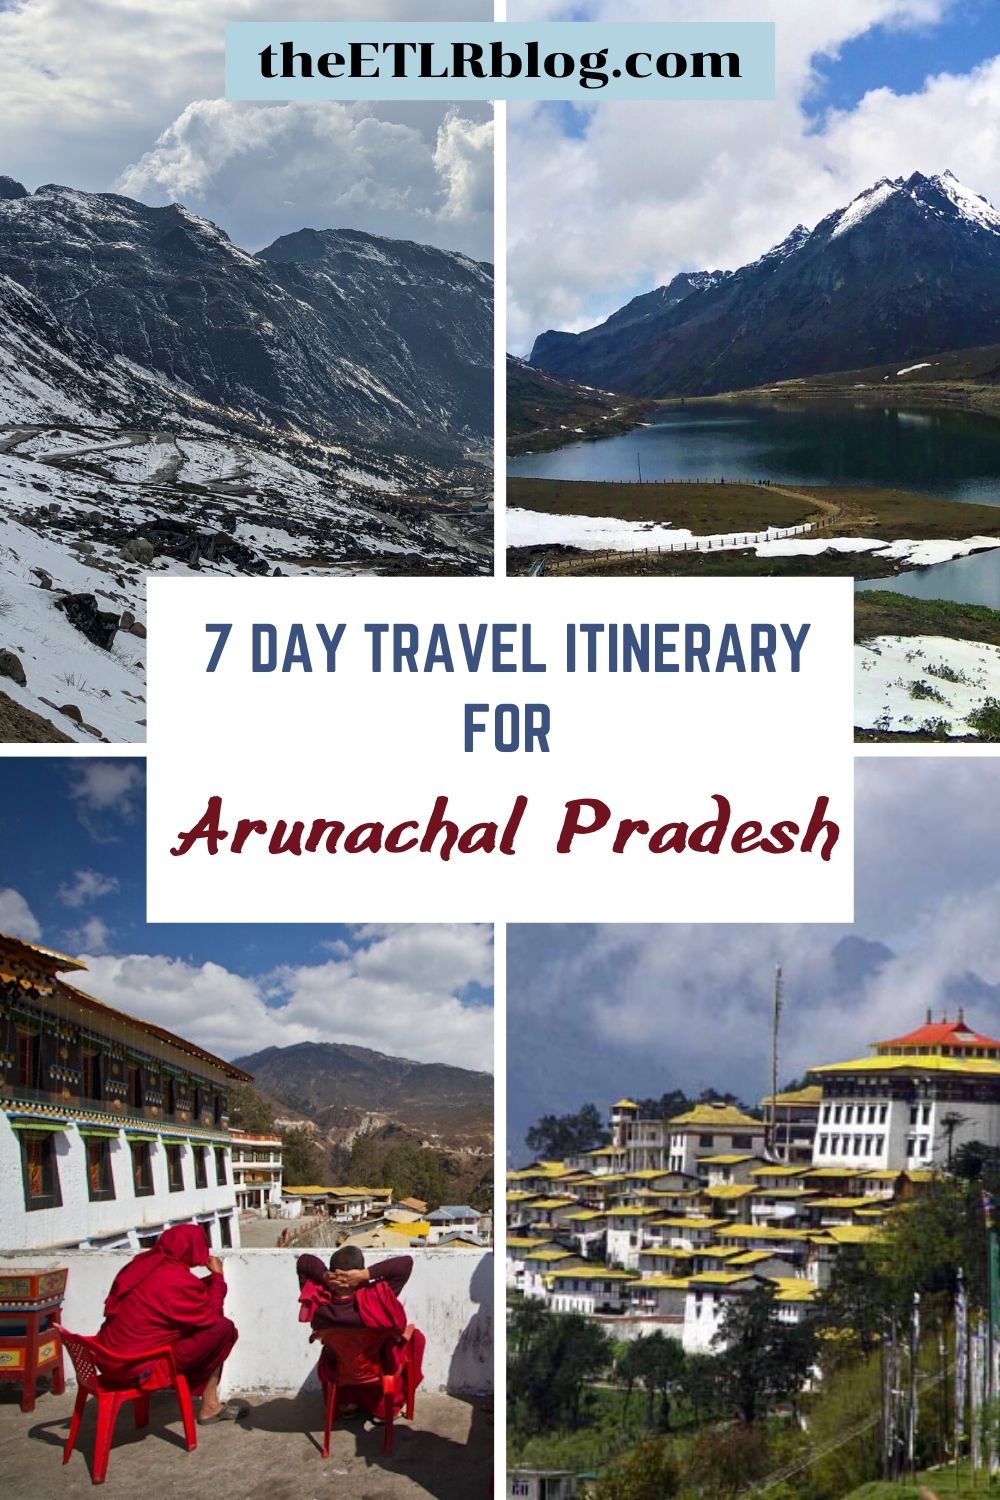 tourist brochure for arunachal pradesh